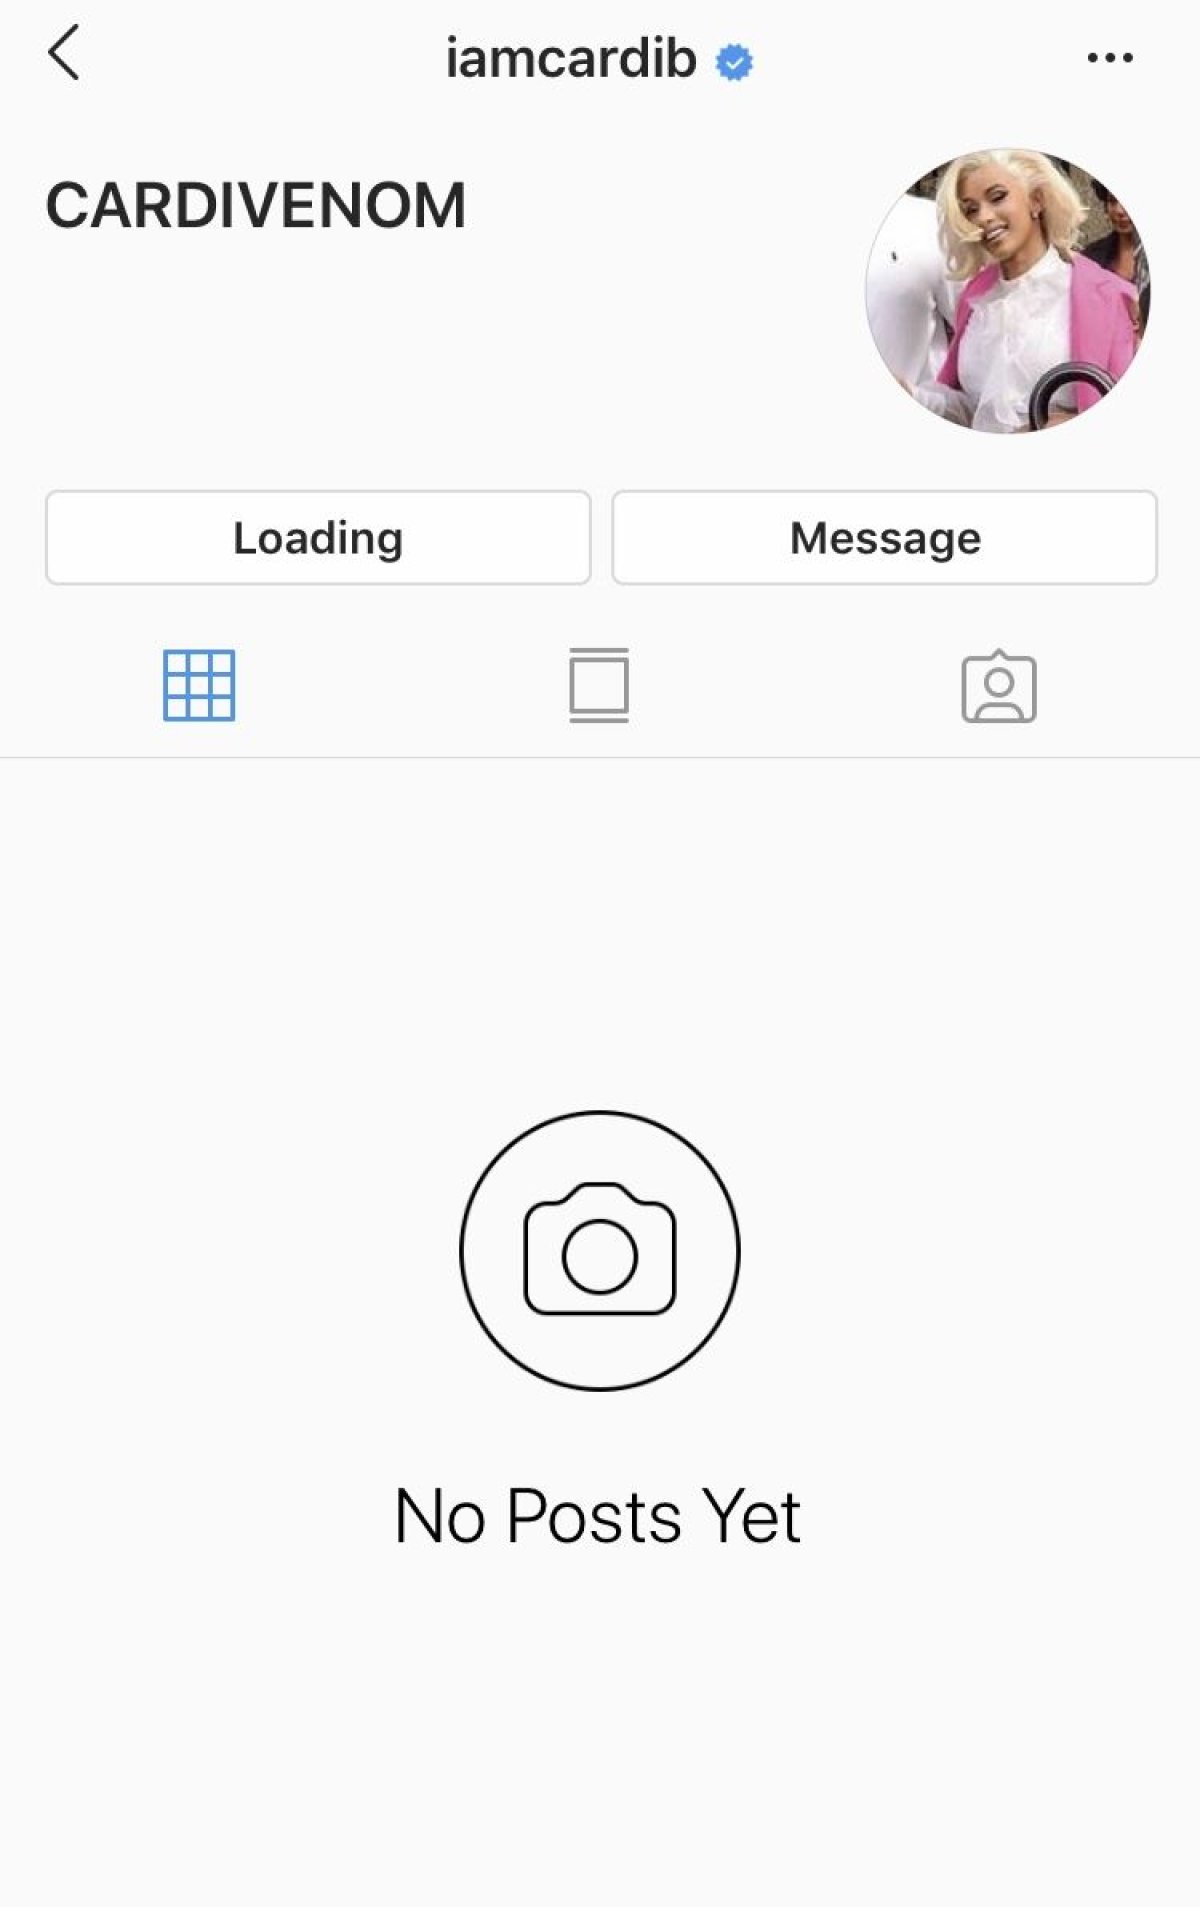 Cardi B Quits Instagram